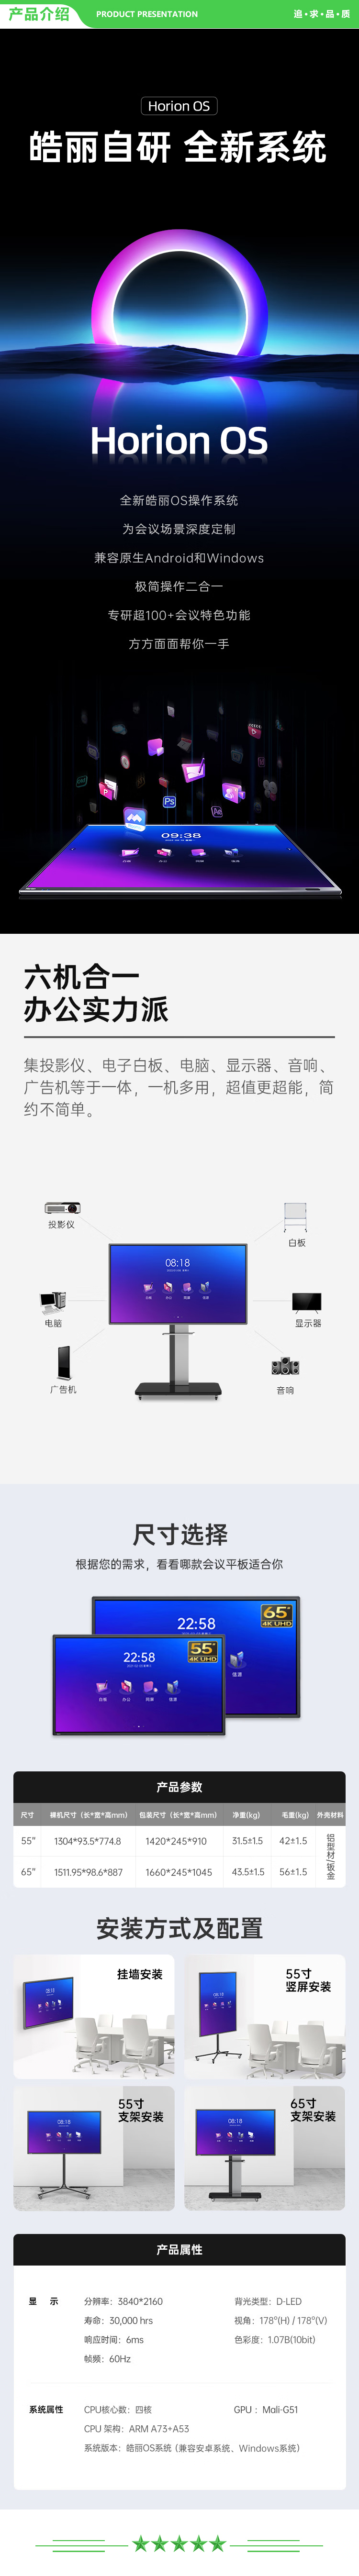 皓丽 E65英寸+智能笔同屏器+移动支架 65英寸会议平板 交互式电子白板教学办公一体机 4k触摸投影智慧大屏 2.jpg